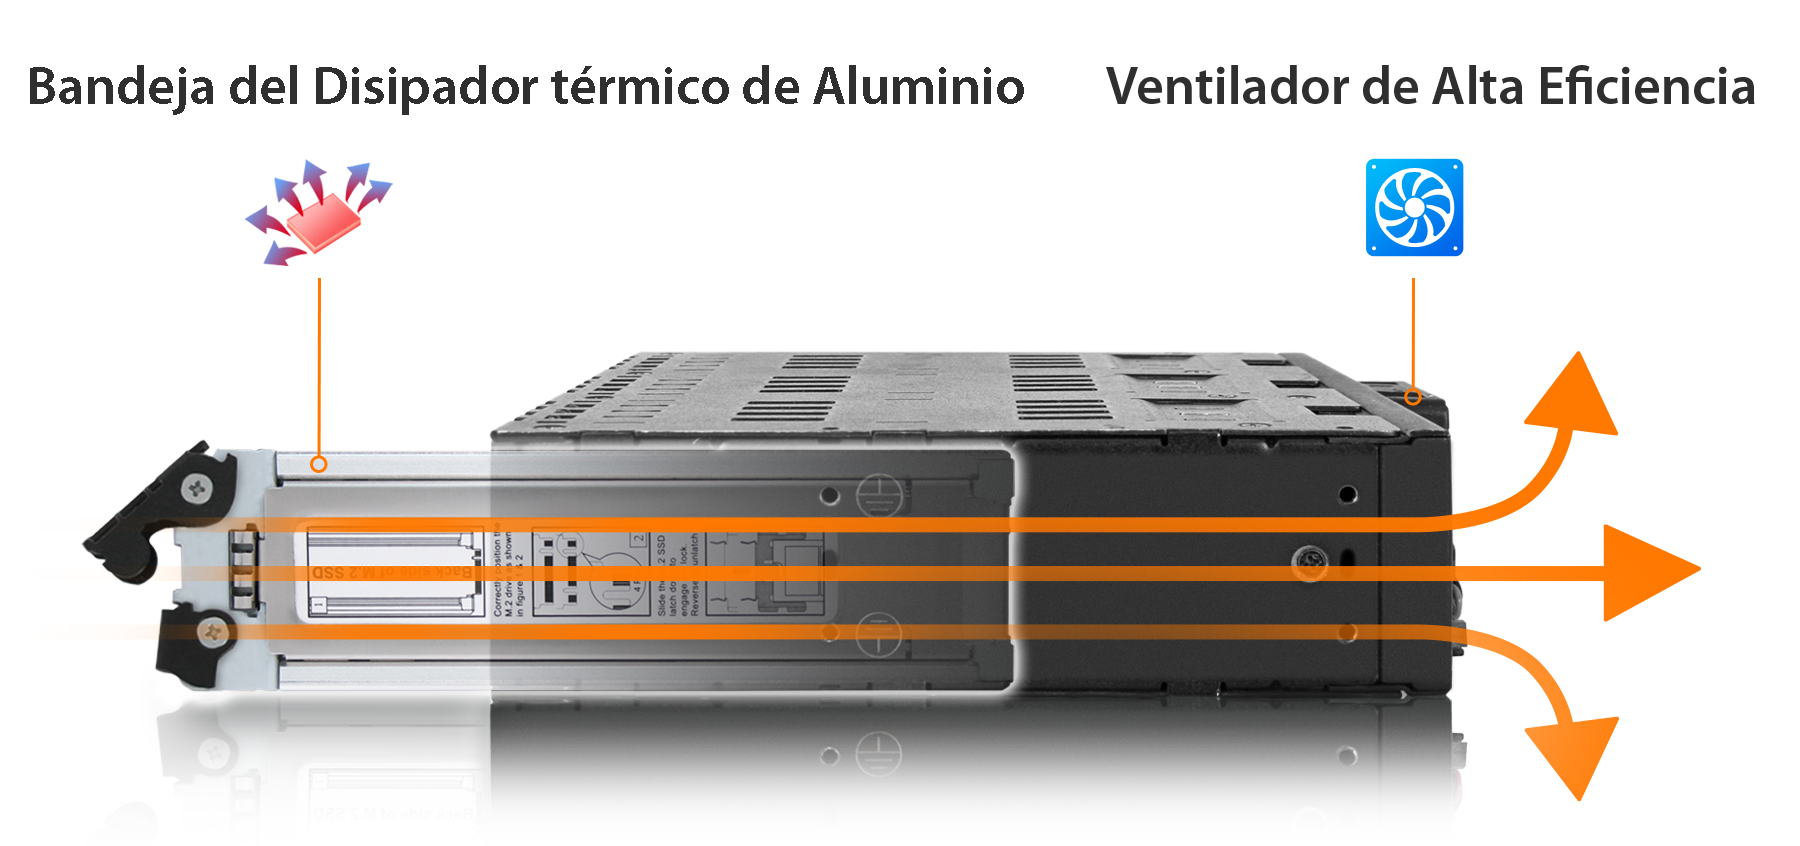 Foto que ilustra el flujo de aire a través del disipador de calor de aluminio y la ventilación de alta eficiencia